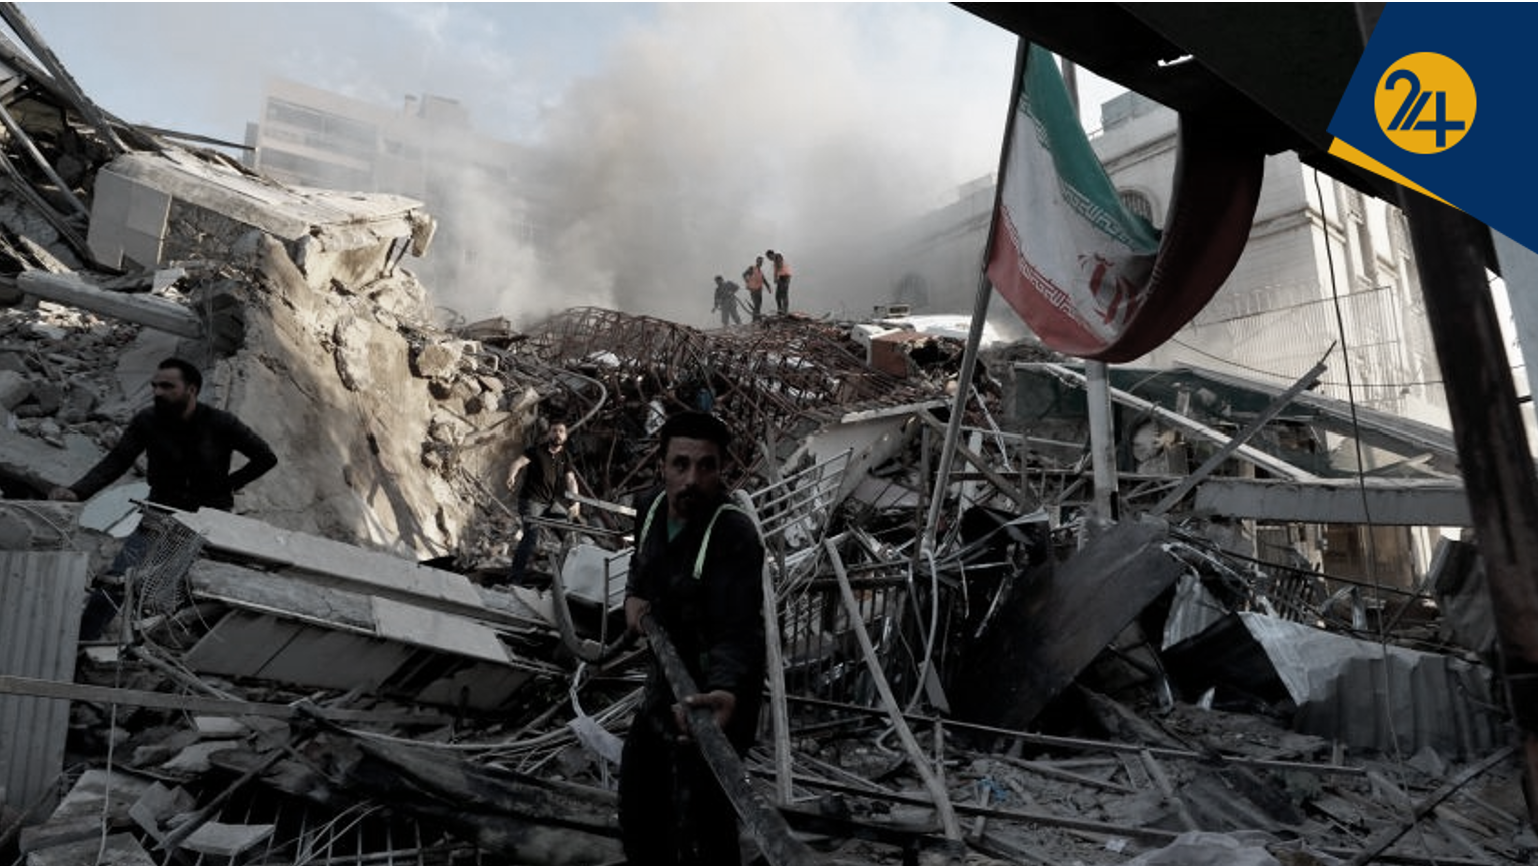 خاورمیانه در آستانه سقوط | حسین موسویان: زمان معامله بزرگ فرارسیده است